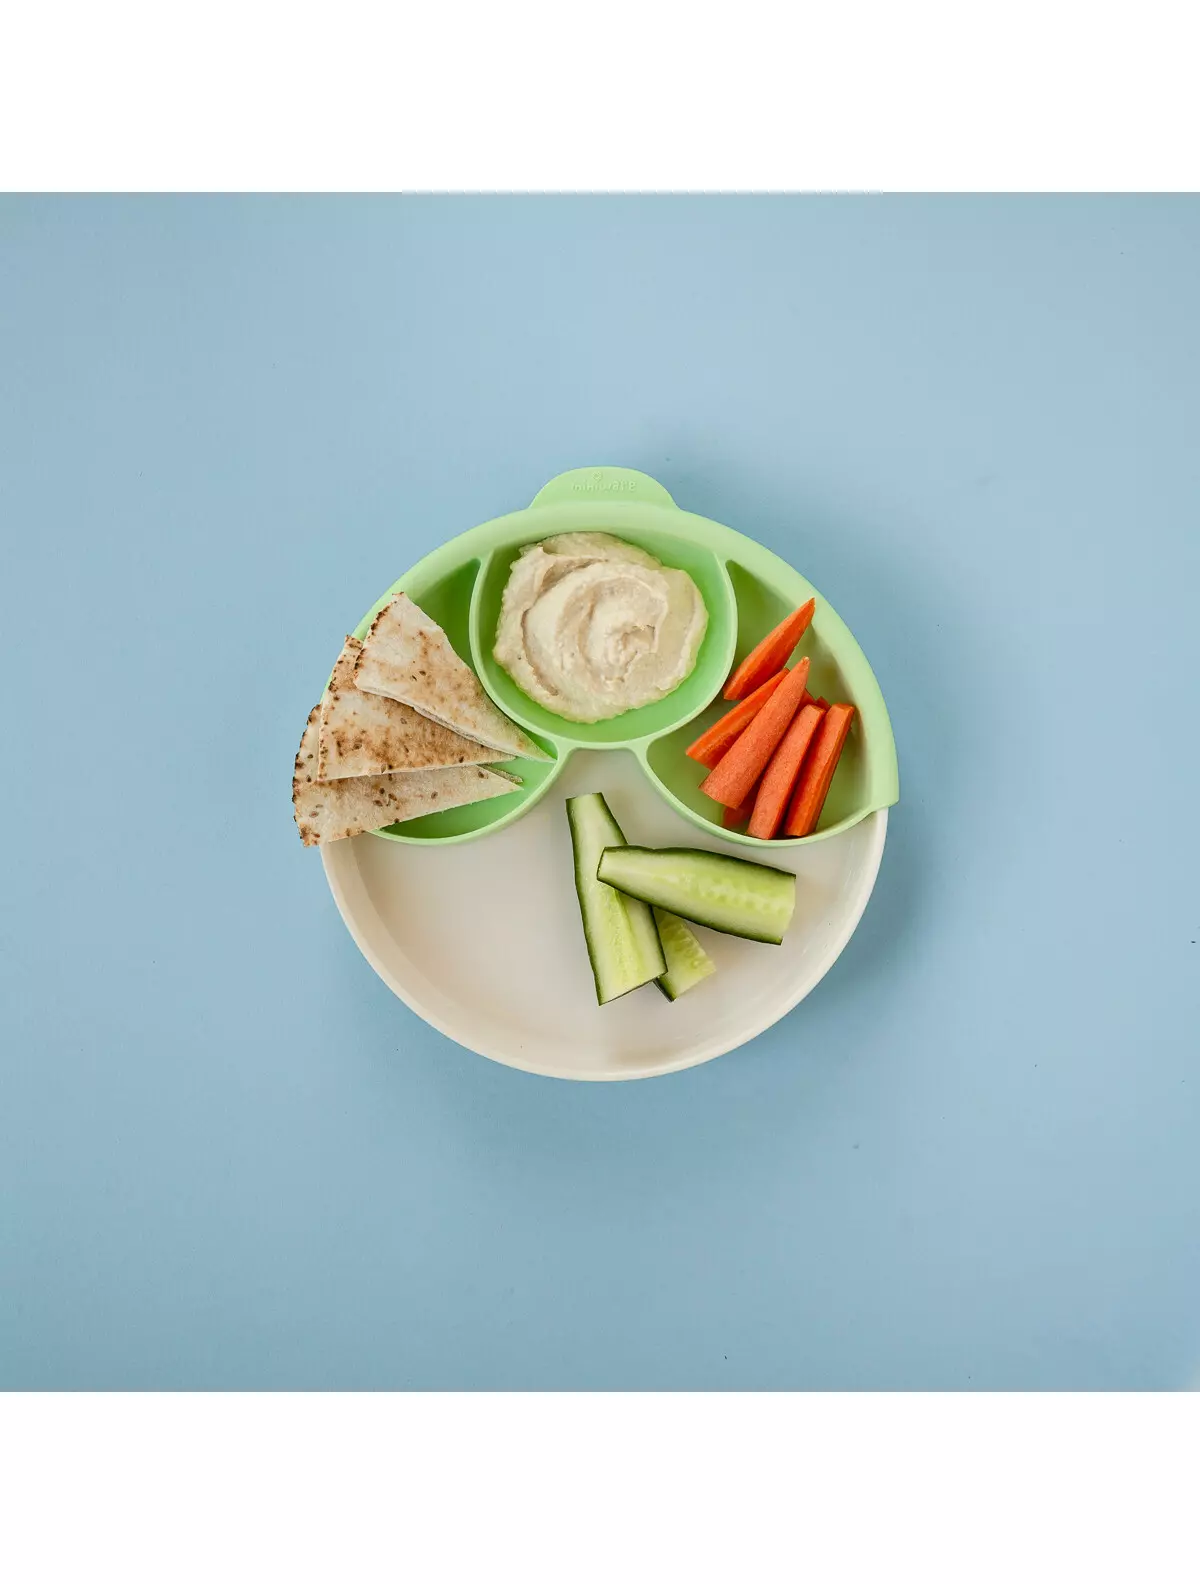 Set diversificare hrana bebelusi Miniware Healthy Meal, 100% din materiale naturale biodegradabile, 3 piese, Keylime